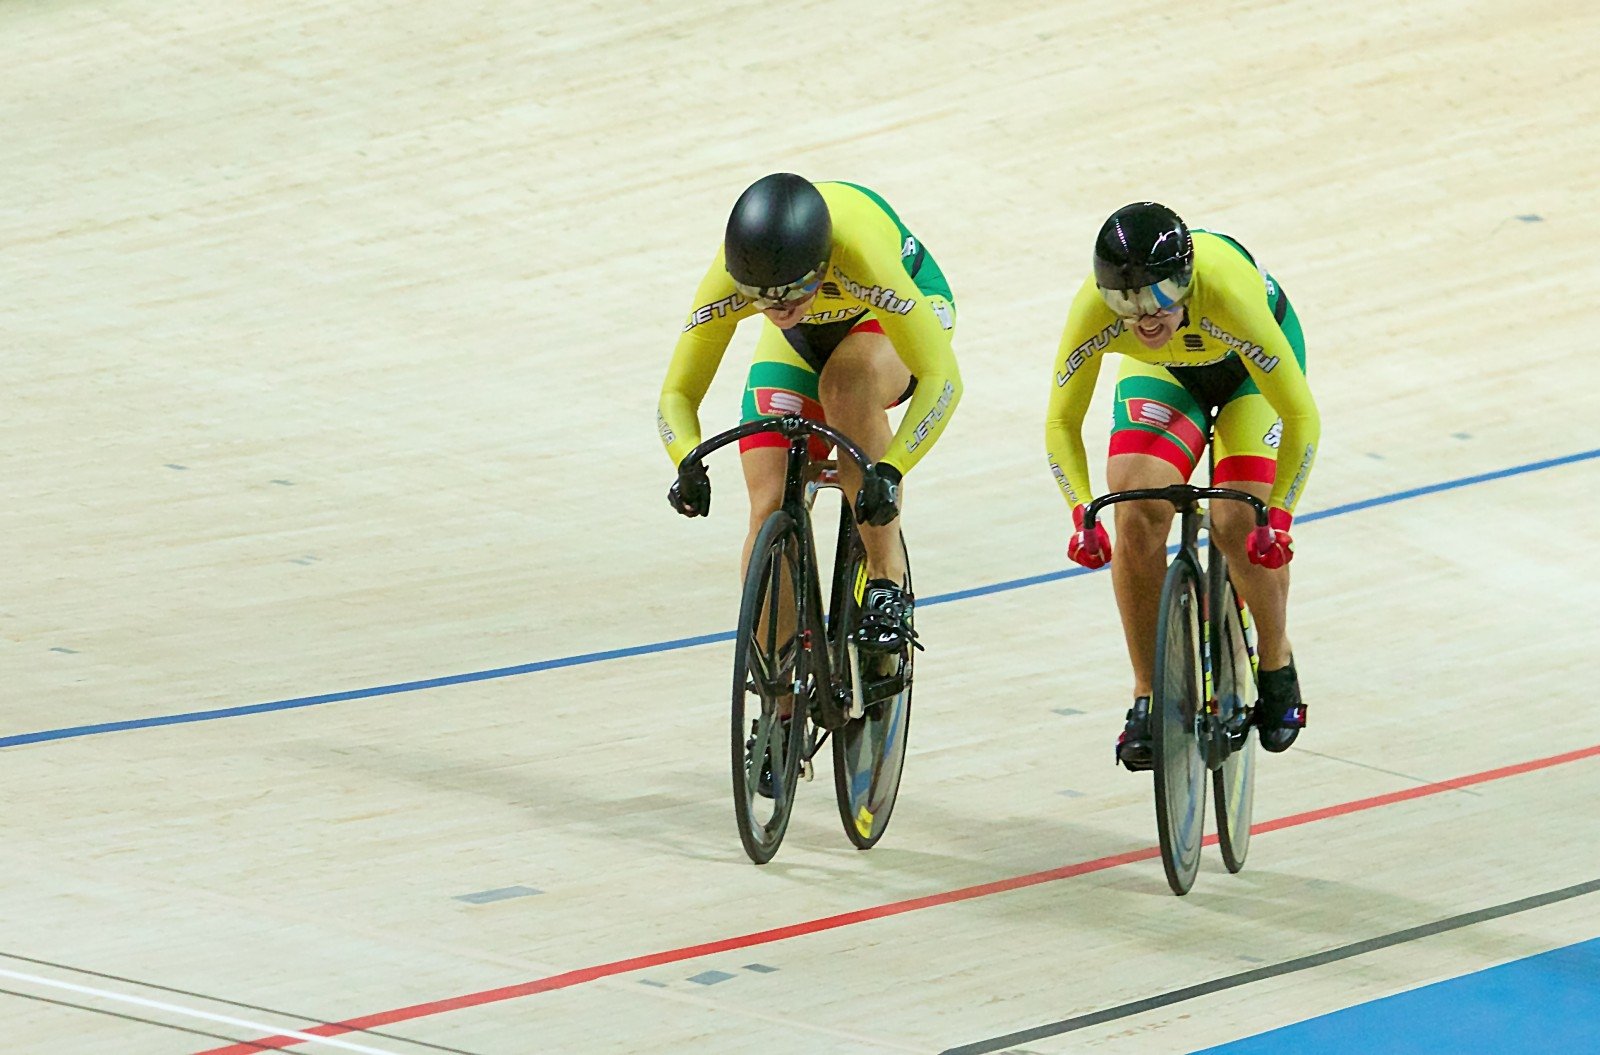 Portugalijoje vykusiose tarptautinėse dviračių treko varžybose „Trofeu Internacional Municipio de Anadia“ (UCI I kategorija) Lietuvos atstovai iškovojo net aštuonis medalius – po tris aukso ir sidabro bei du bronzos.